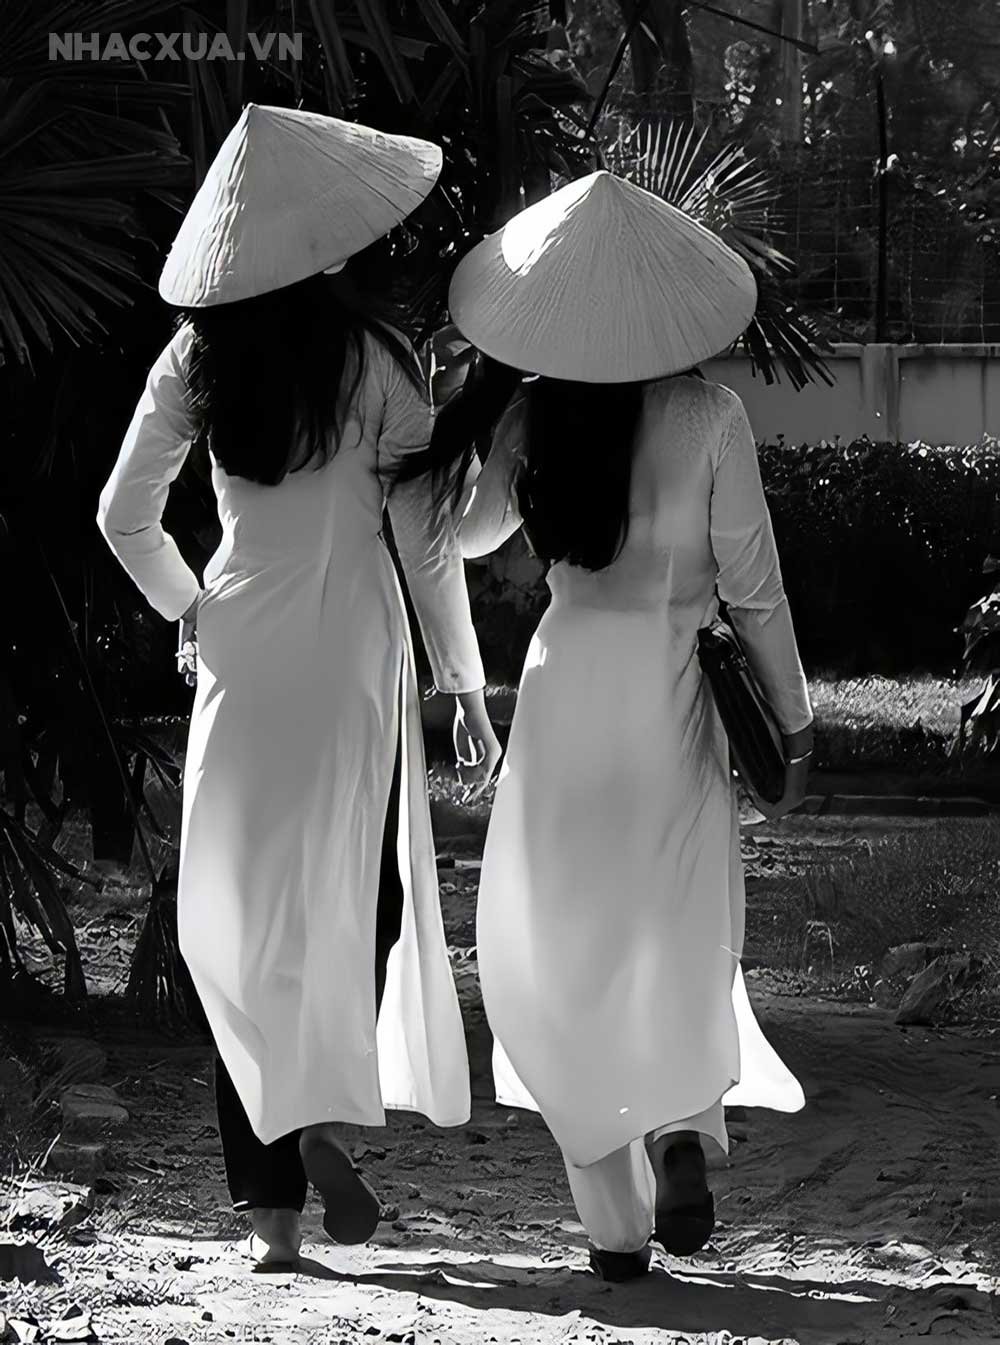 Nhạc vàng và chiếc nón lá đã trở thành một bức tranh văn hóa của Việt Nam. Hãy lắng nghe những ca khúc trữ tình và cảm nhận với chiếc nón lá thật bình yên và thanh bình trên màn hình của bạn. Hình ảnh này sẽ mang đến cho bạn sự yên bình và thư giãn.